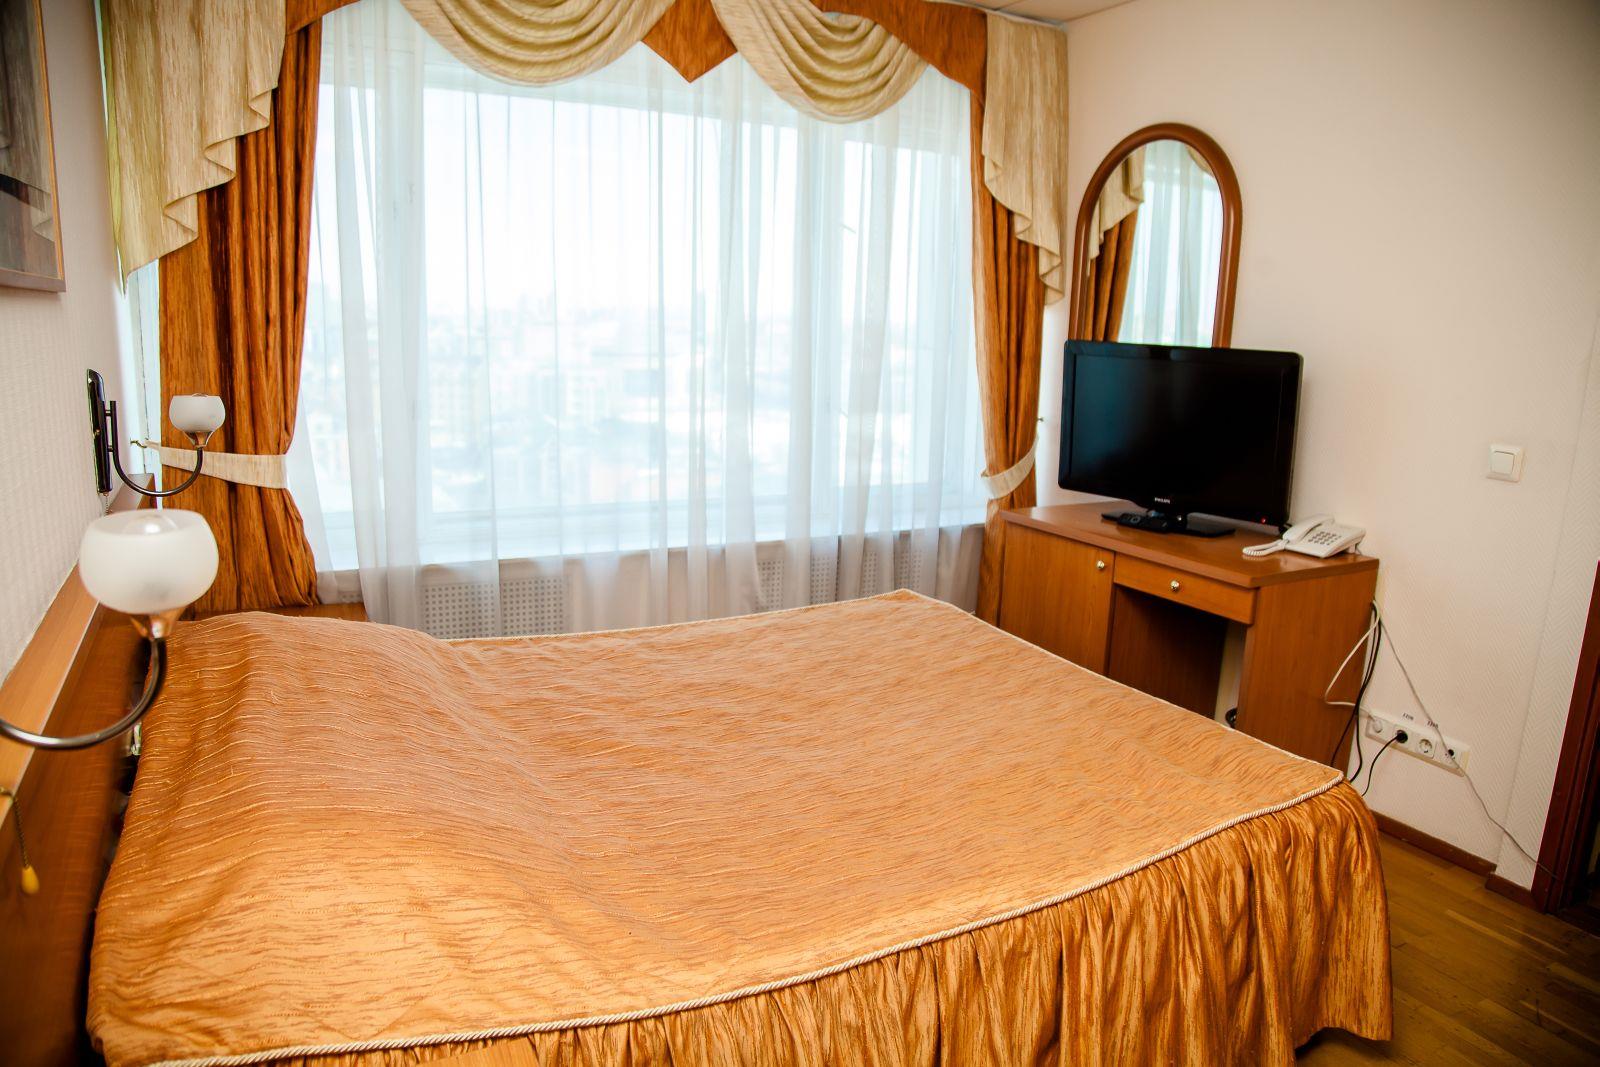 отель татарстан казань официальный сайт